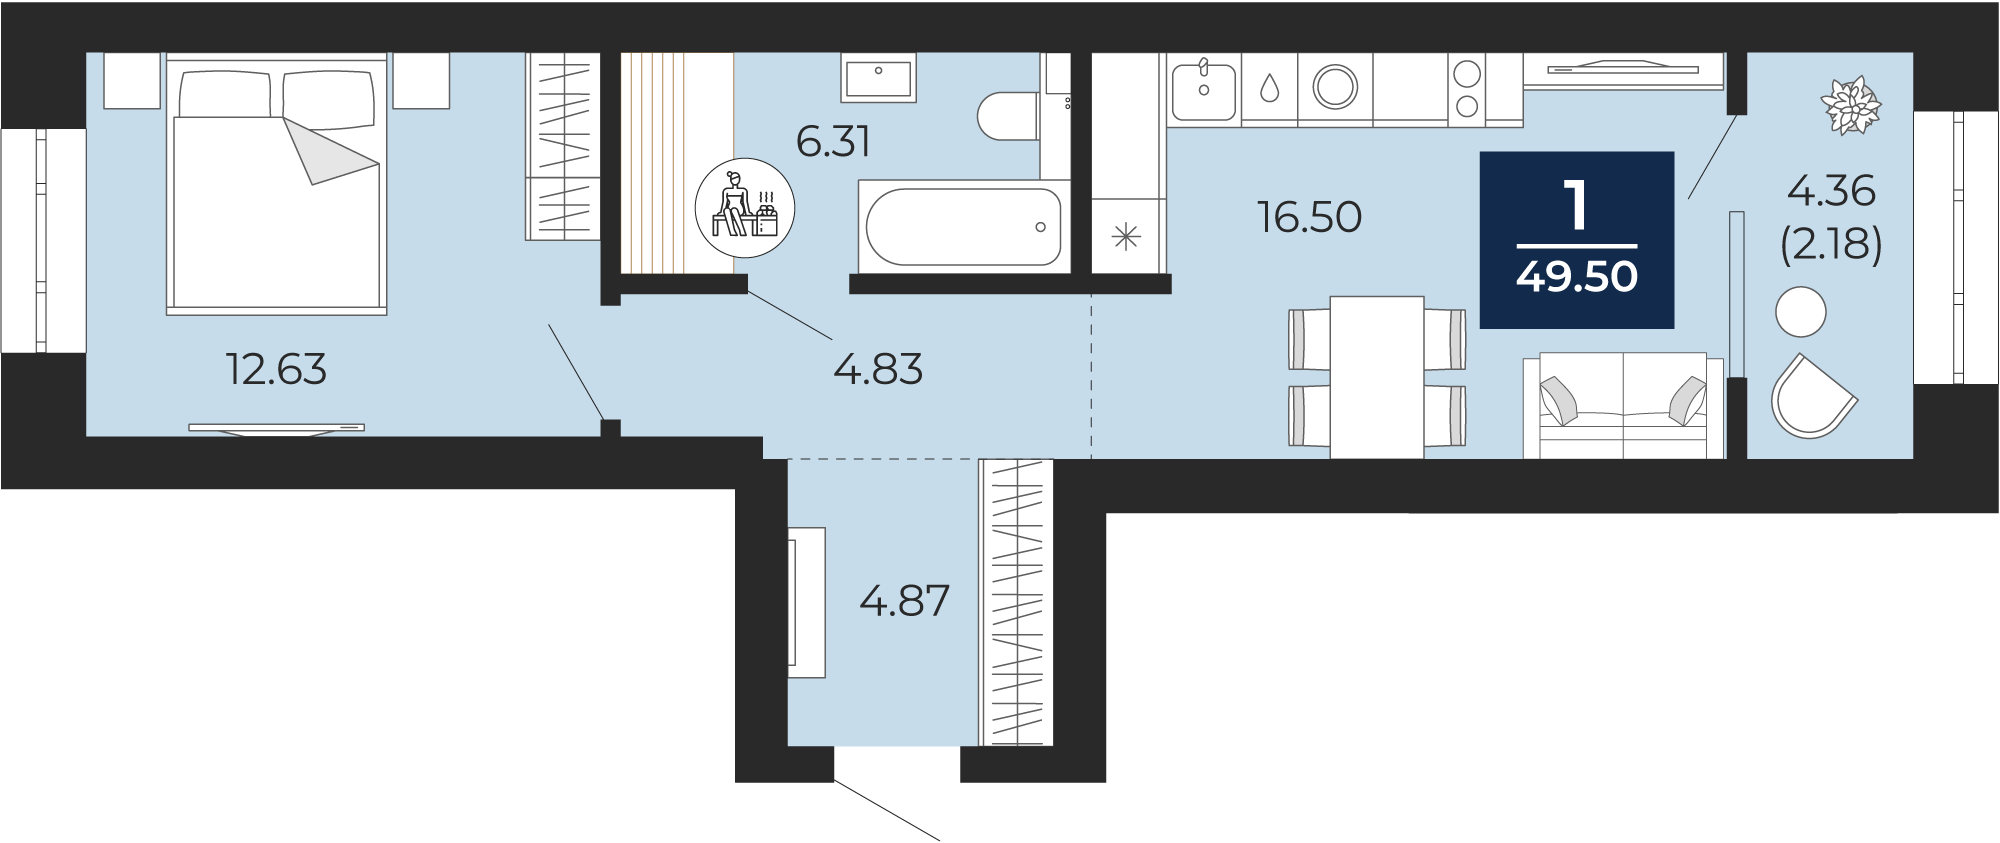 Квартира № 175, 1-комнатная, 49.5 кв. м, 9 этаж